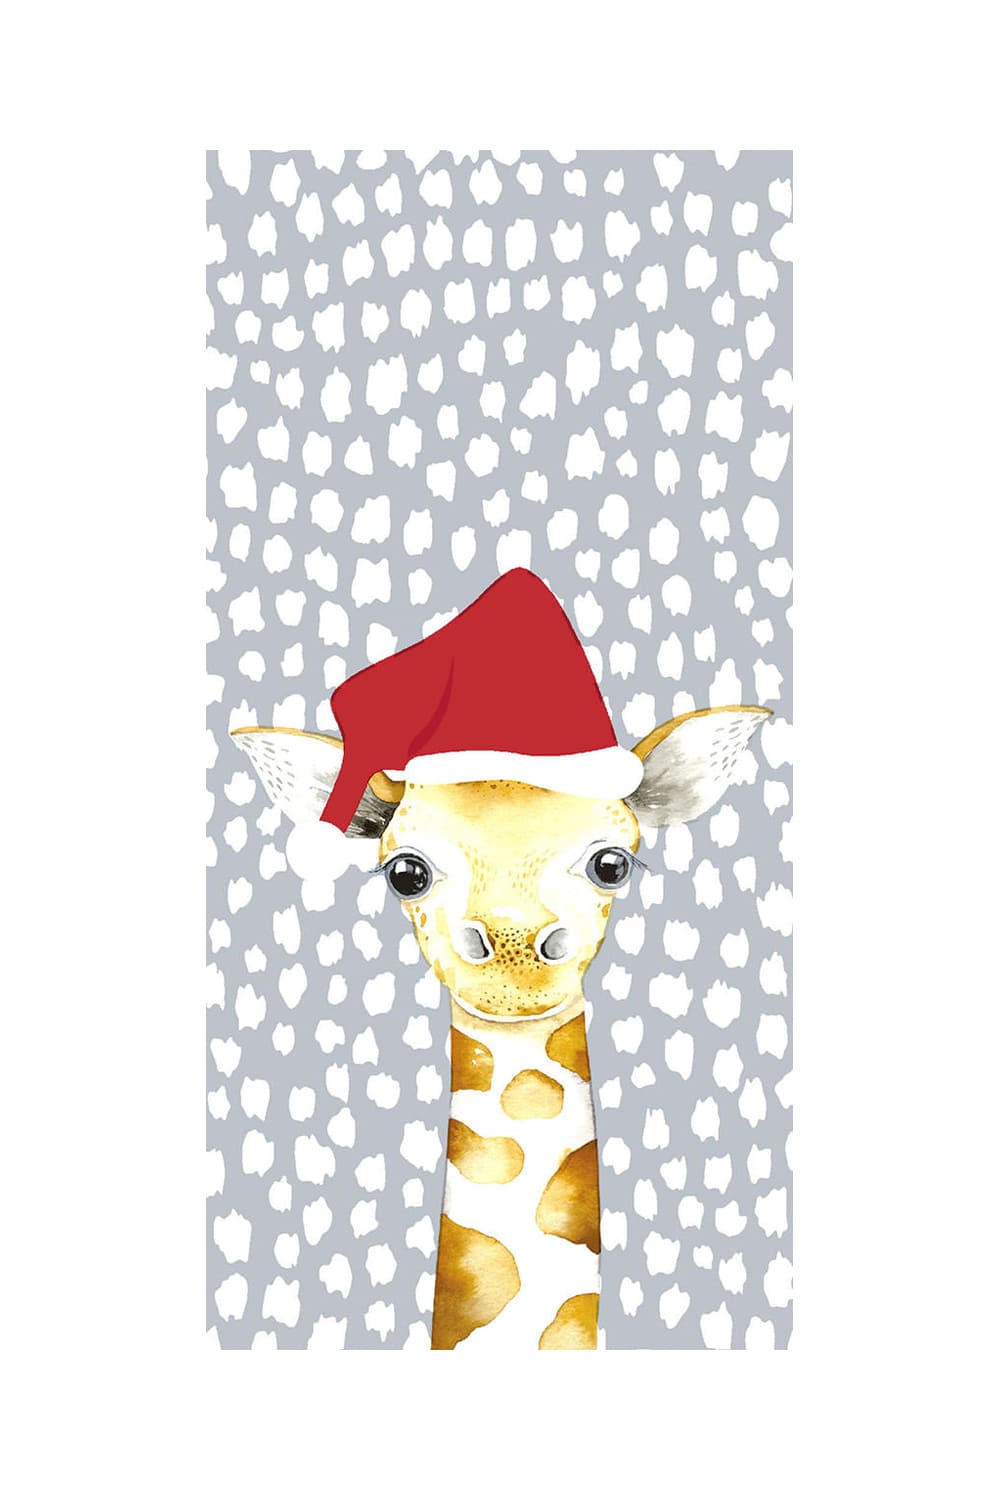 Diese witzigen Giraffe Taschentuecher sorgen bestimmt fuer viel Freude. Die beste Begleitung fuer Unterwegs, vor allem bei laufender Nase. Ein witziges Geschenk zu Weihnachten. Auch perfekt fuer das Befuellen eines Adventskalenders. Diese Nastuecher kann man auch in ein Geldgeschenk verwandeln.